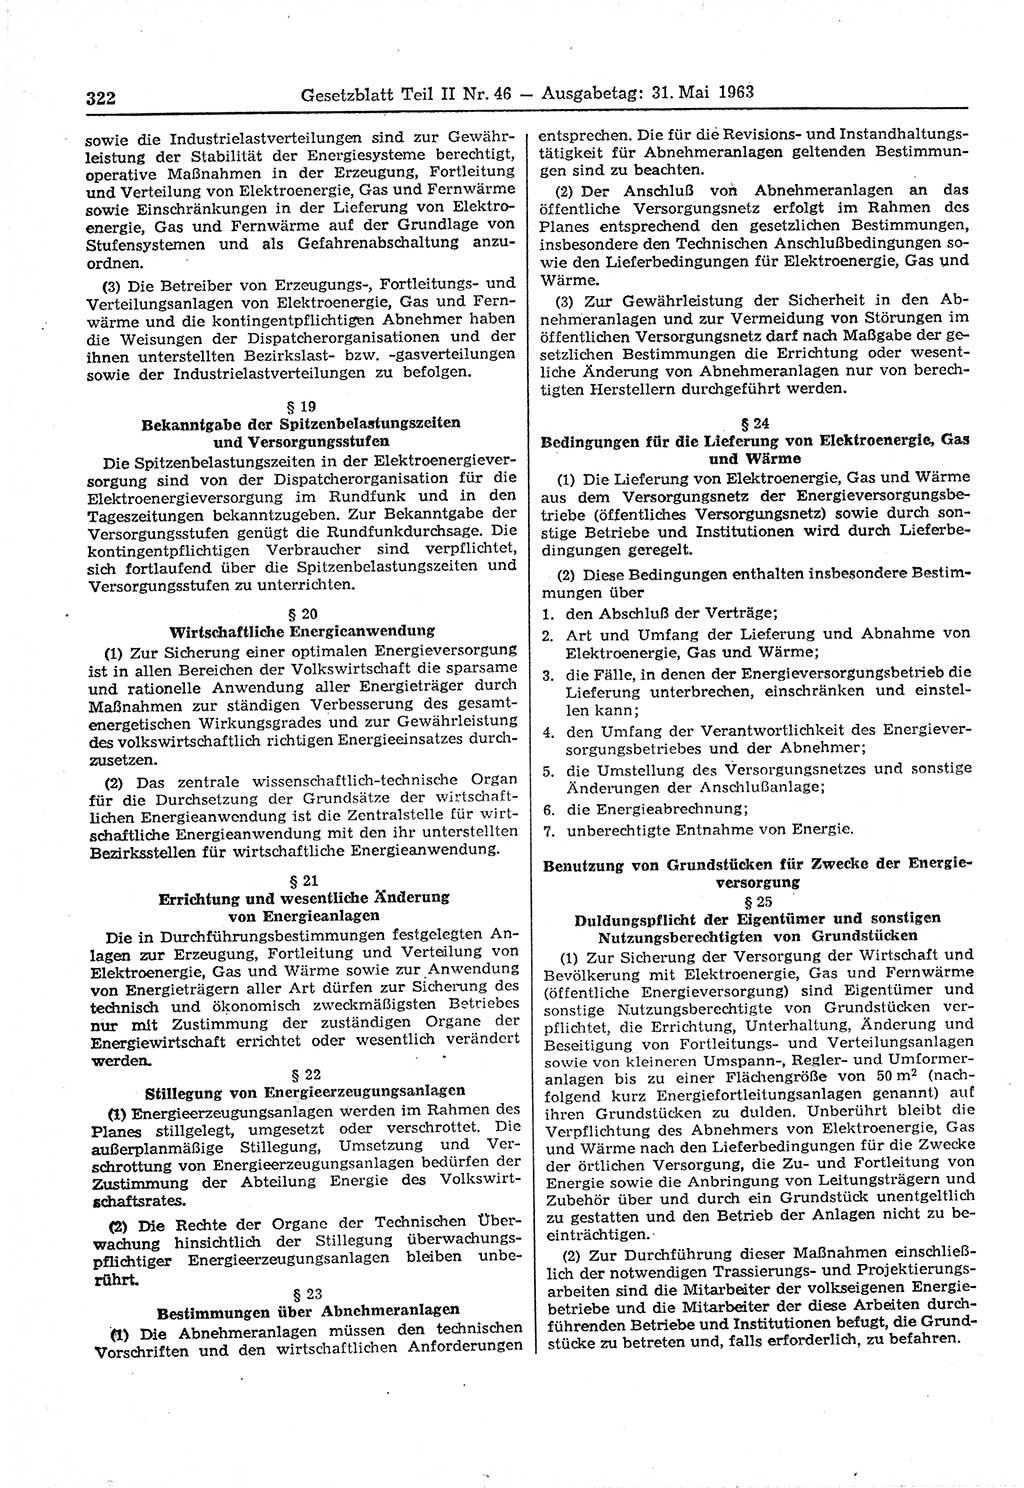 Gesetzblatt (GBl.) der Deutschen Demokratischen Republik (DDR) Teil ⅠⅠ 1963, Seite 322 (GBl. DDR ⅠⅠ 1963, S. 322)